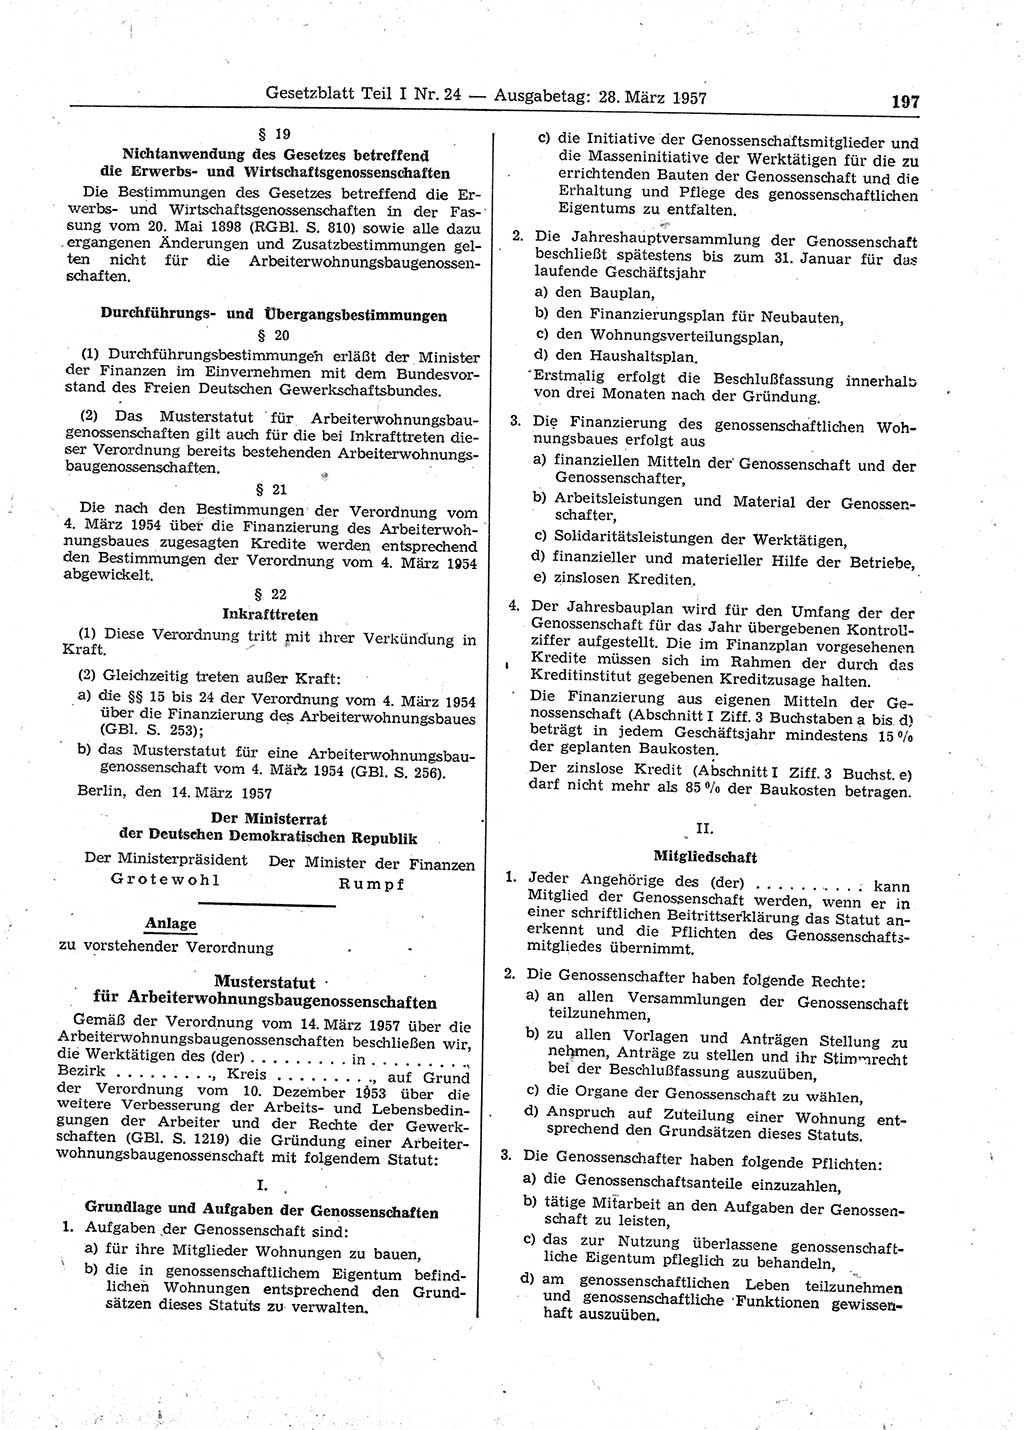 Gesetzblatt (GBl.) der Deutschen Demokratischen Republik (DDR) Teil Ⅰ 1957, Seite 197 (GBl. DDR Ⅰ 1957, S. 197)